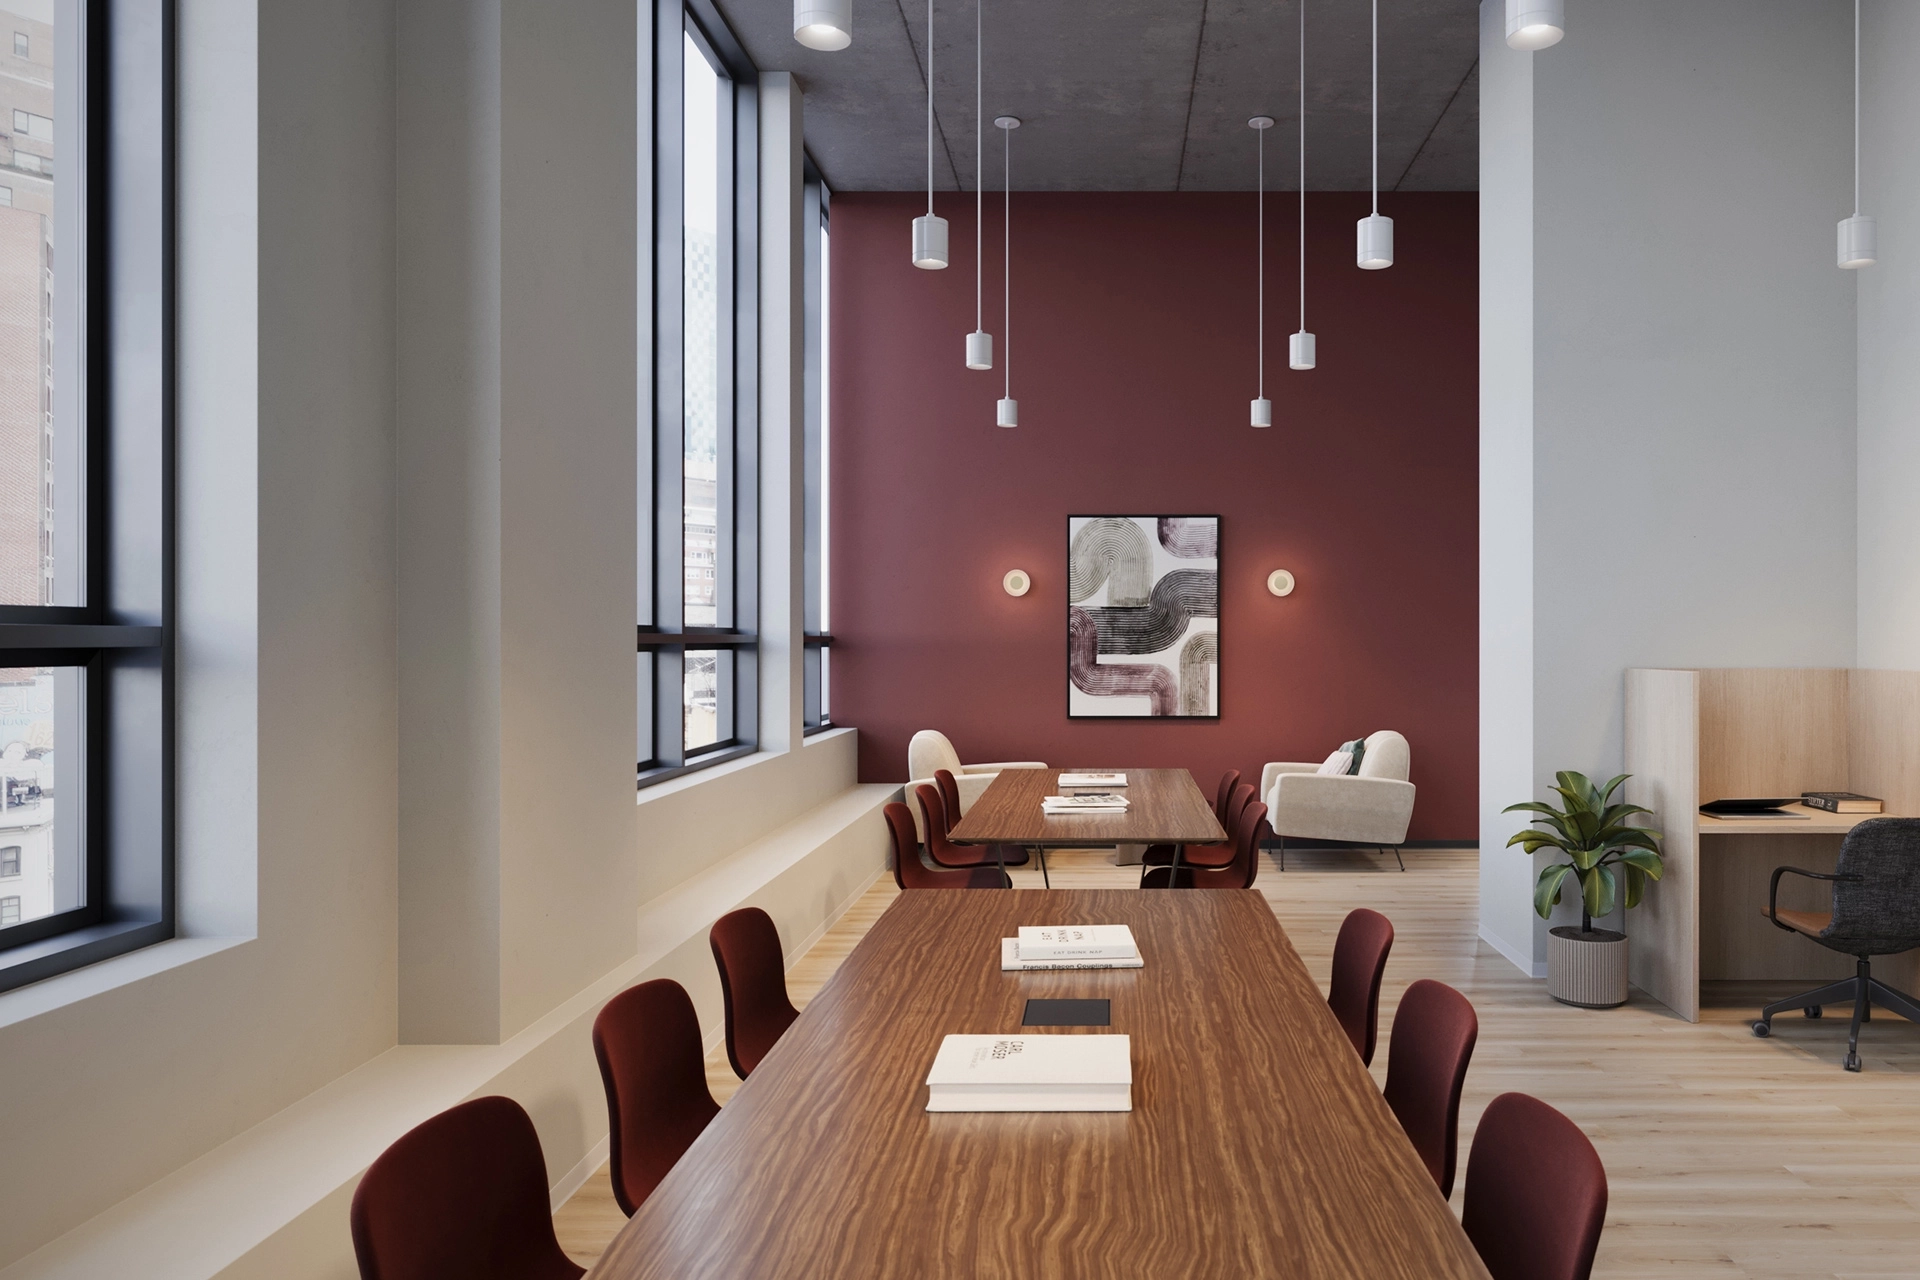 Salle de réunion de coworking moderne avec une longue table en bois, un luminaire suspendu et un mur d'accent bordeaux avec des œuvres d'art.